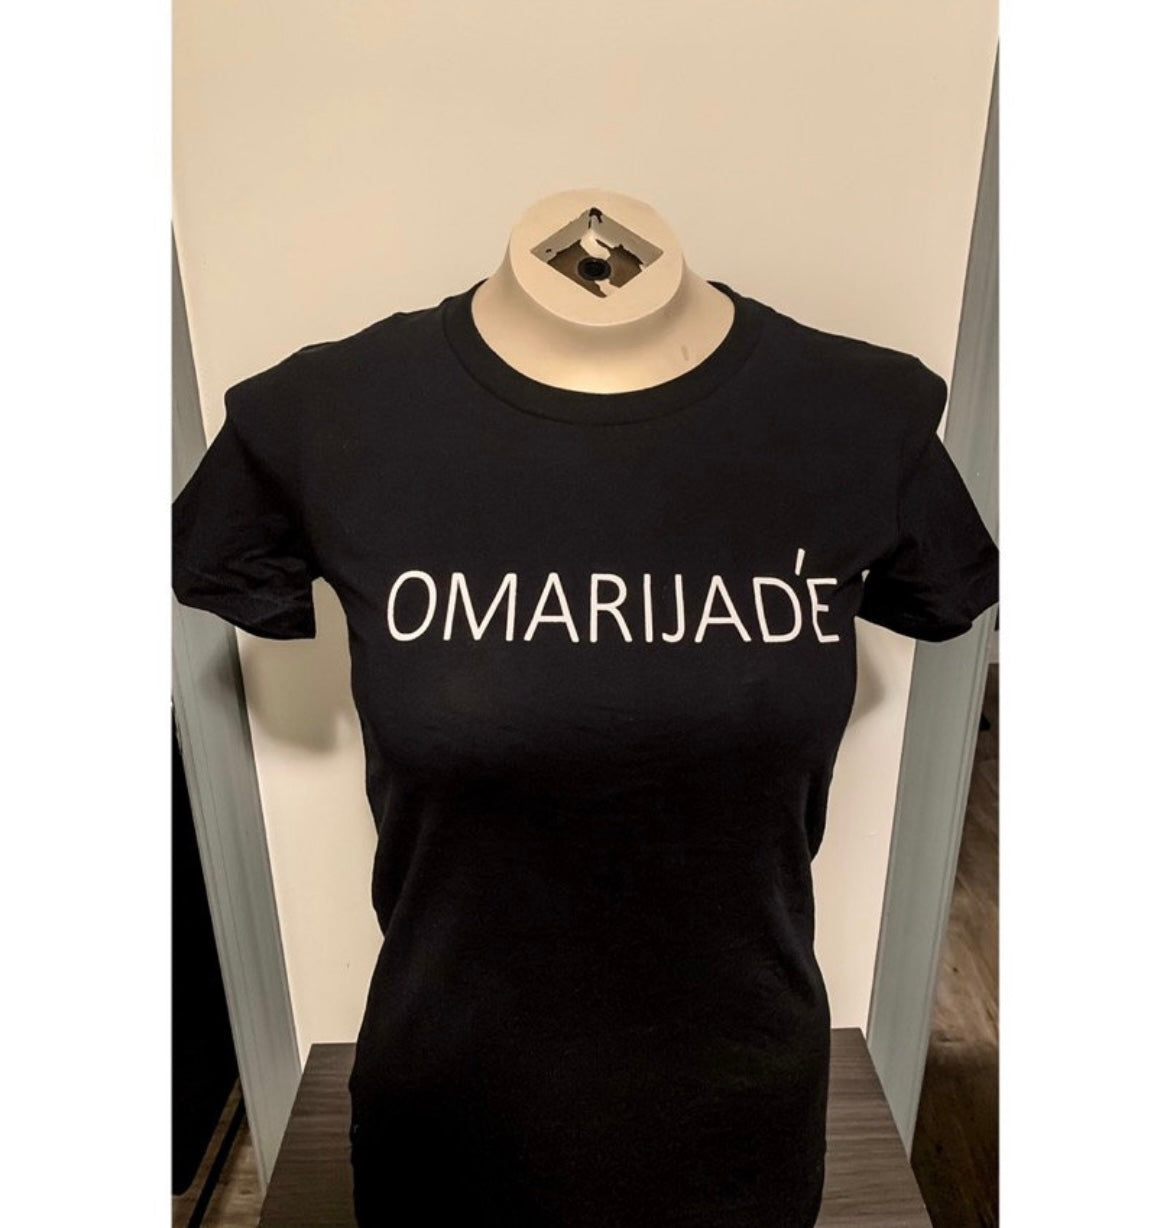 Omarijade’ Signature Tee